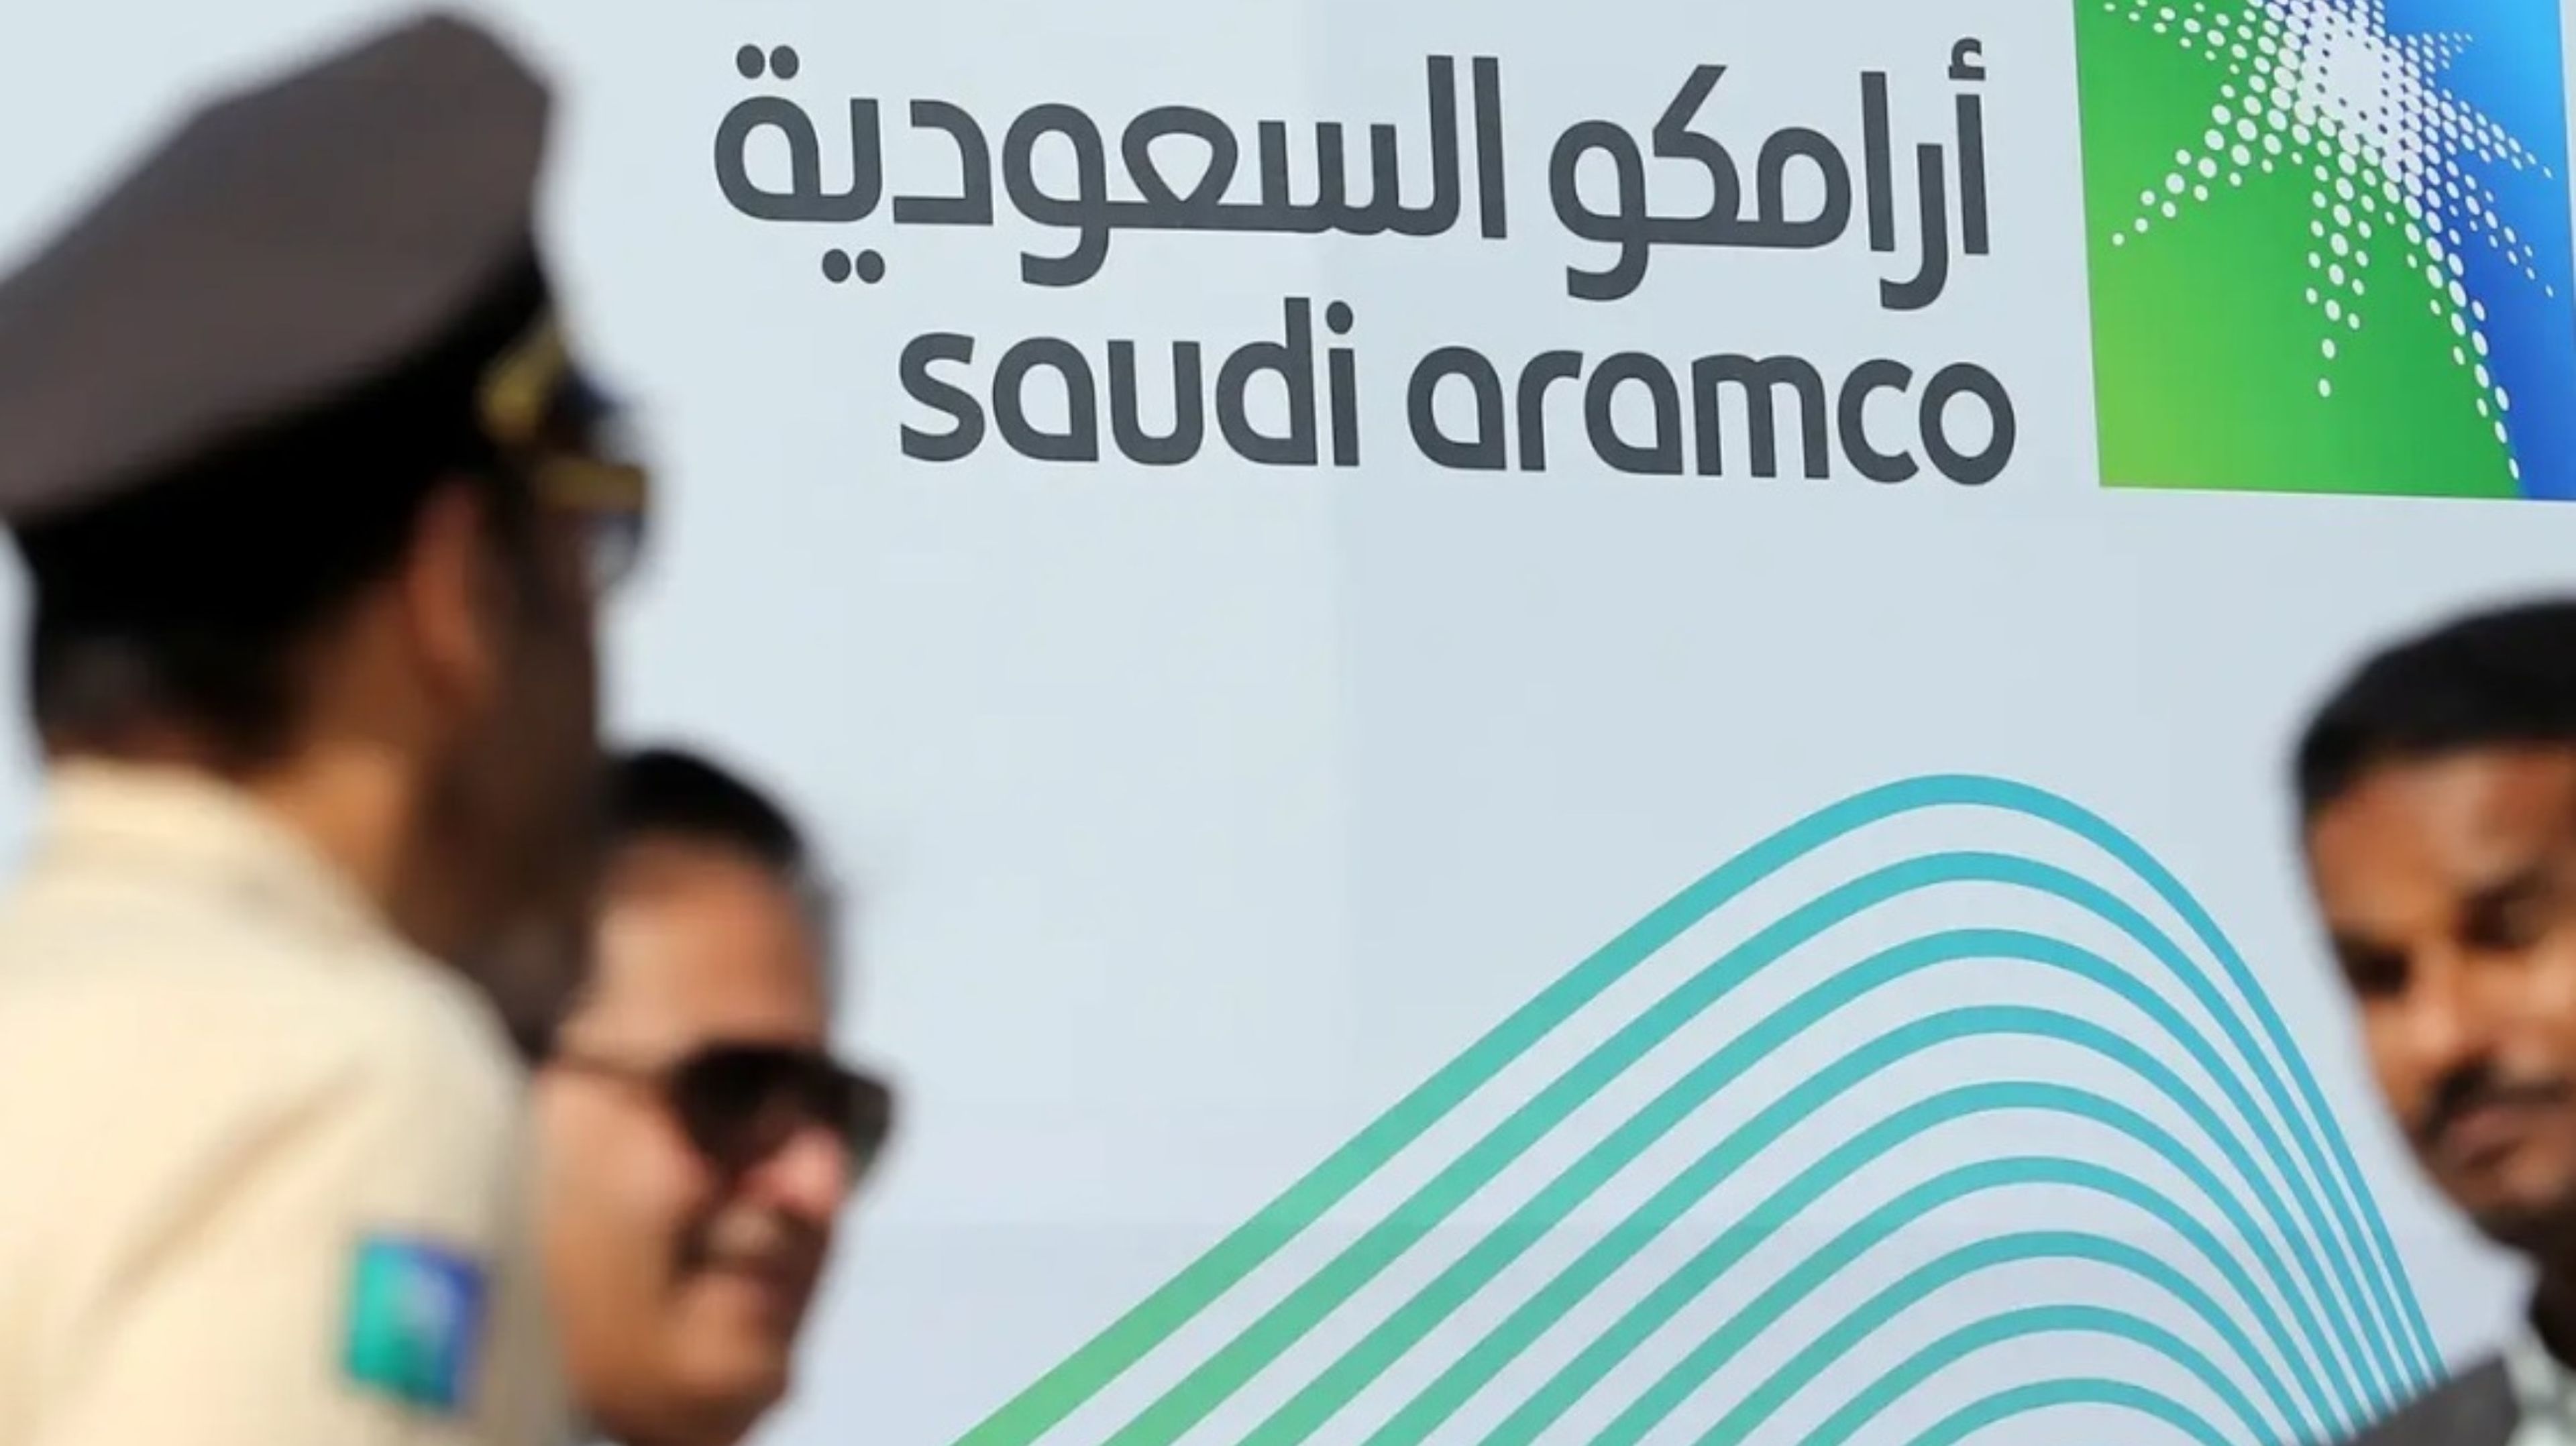 Saudi Aramco es ahora más valiosa que Apple.